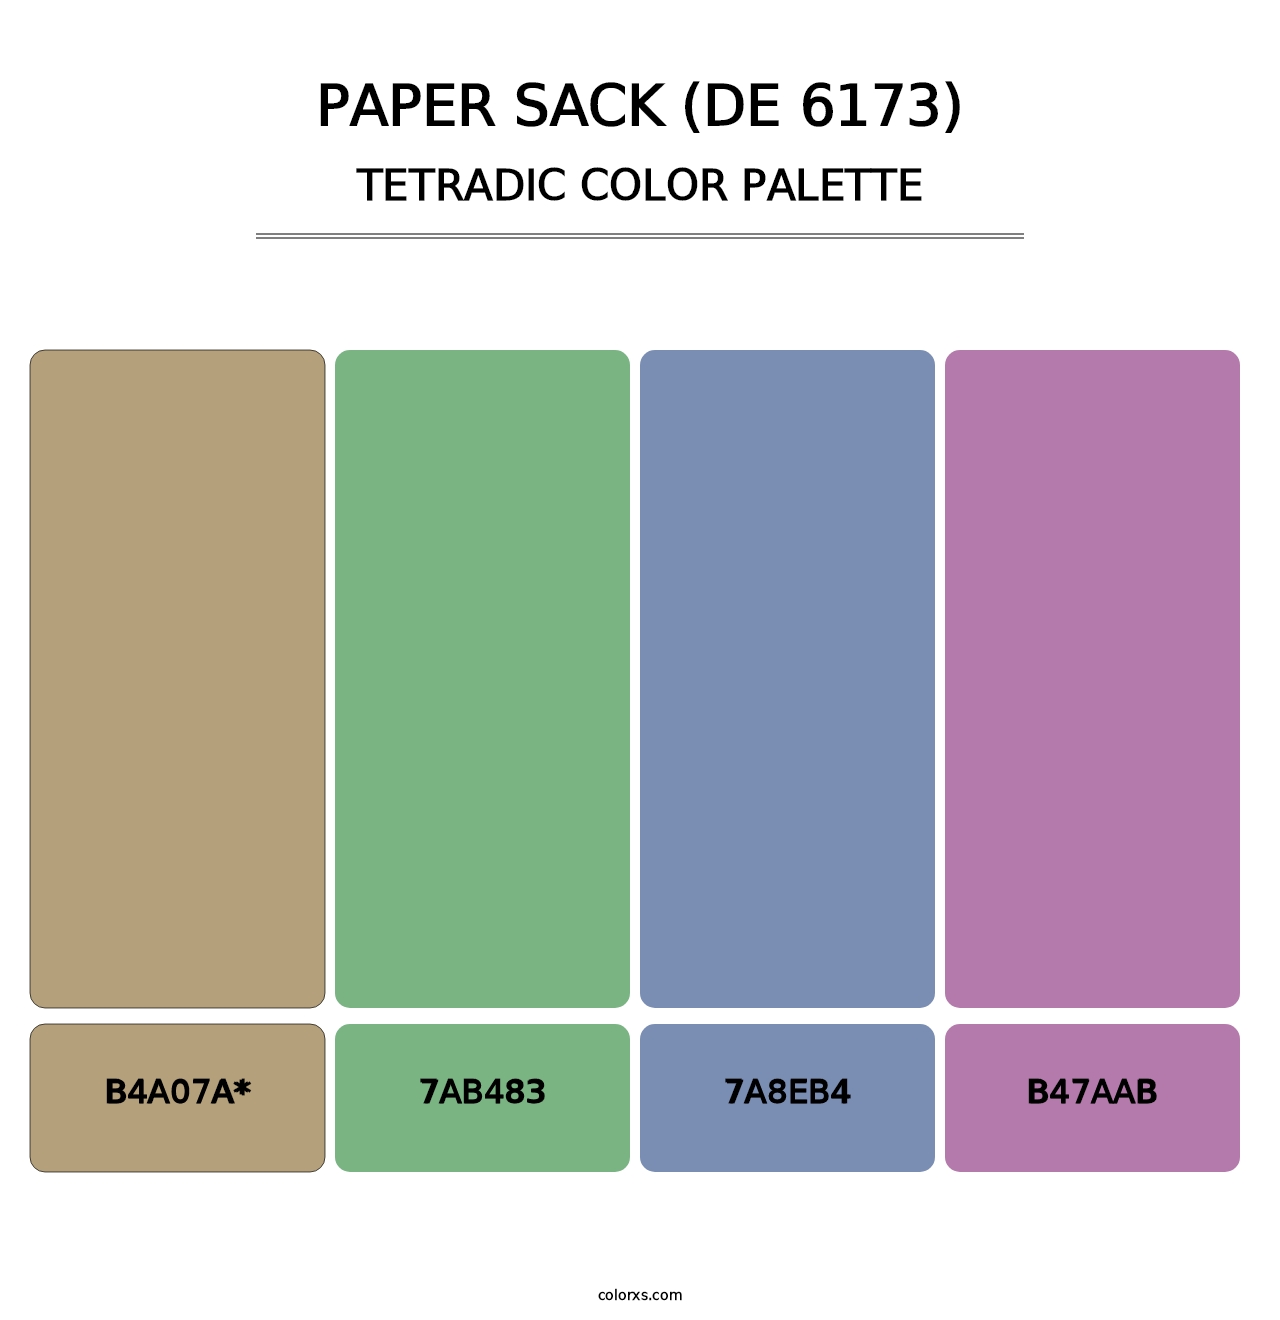 Paper Sack (DE 6173) - Tetradic Color Palette